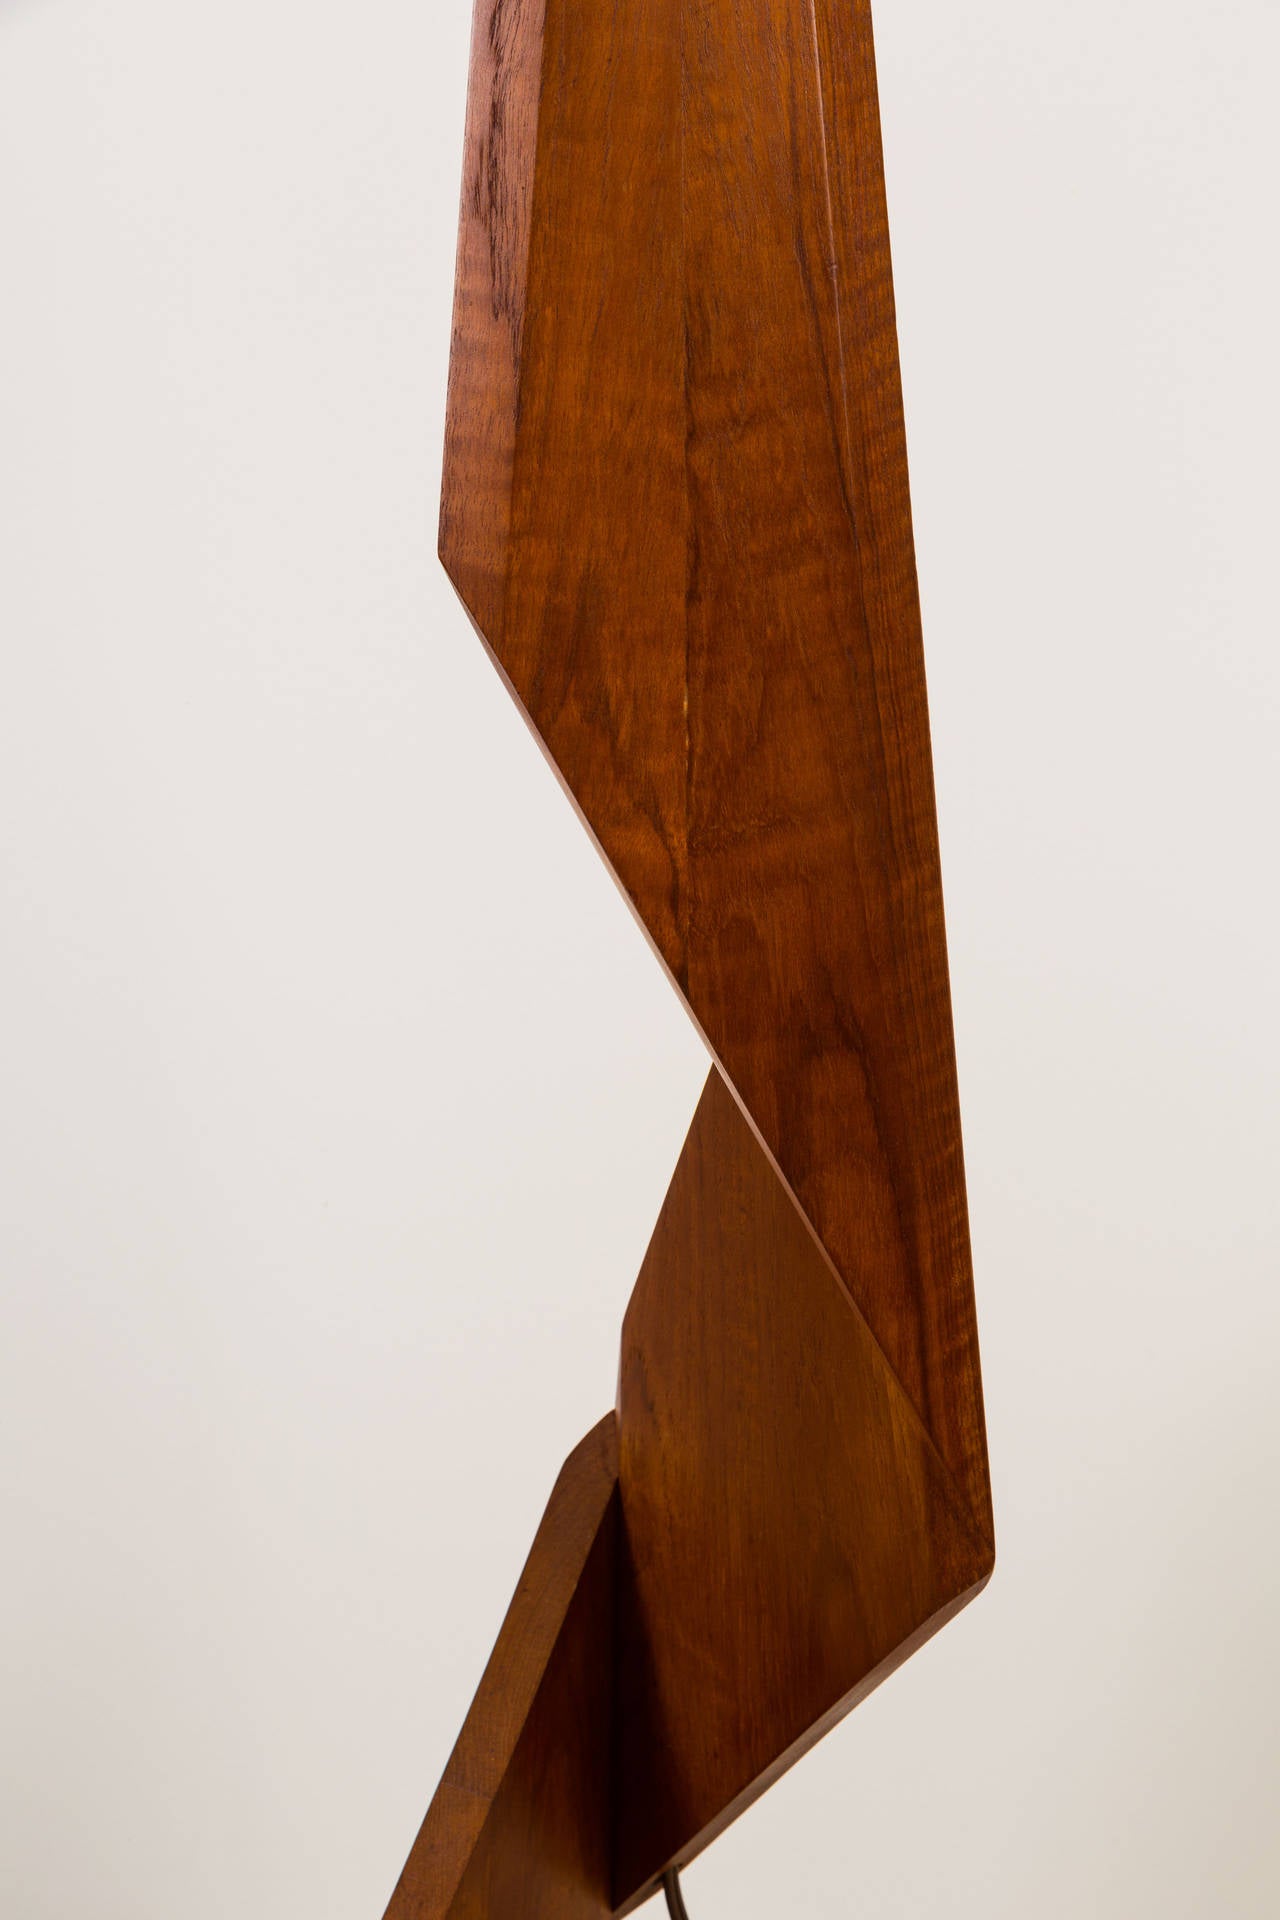 Mid-20th Century Sculptural Danish Floor Lamp